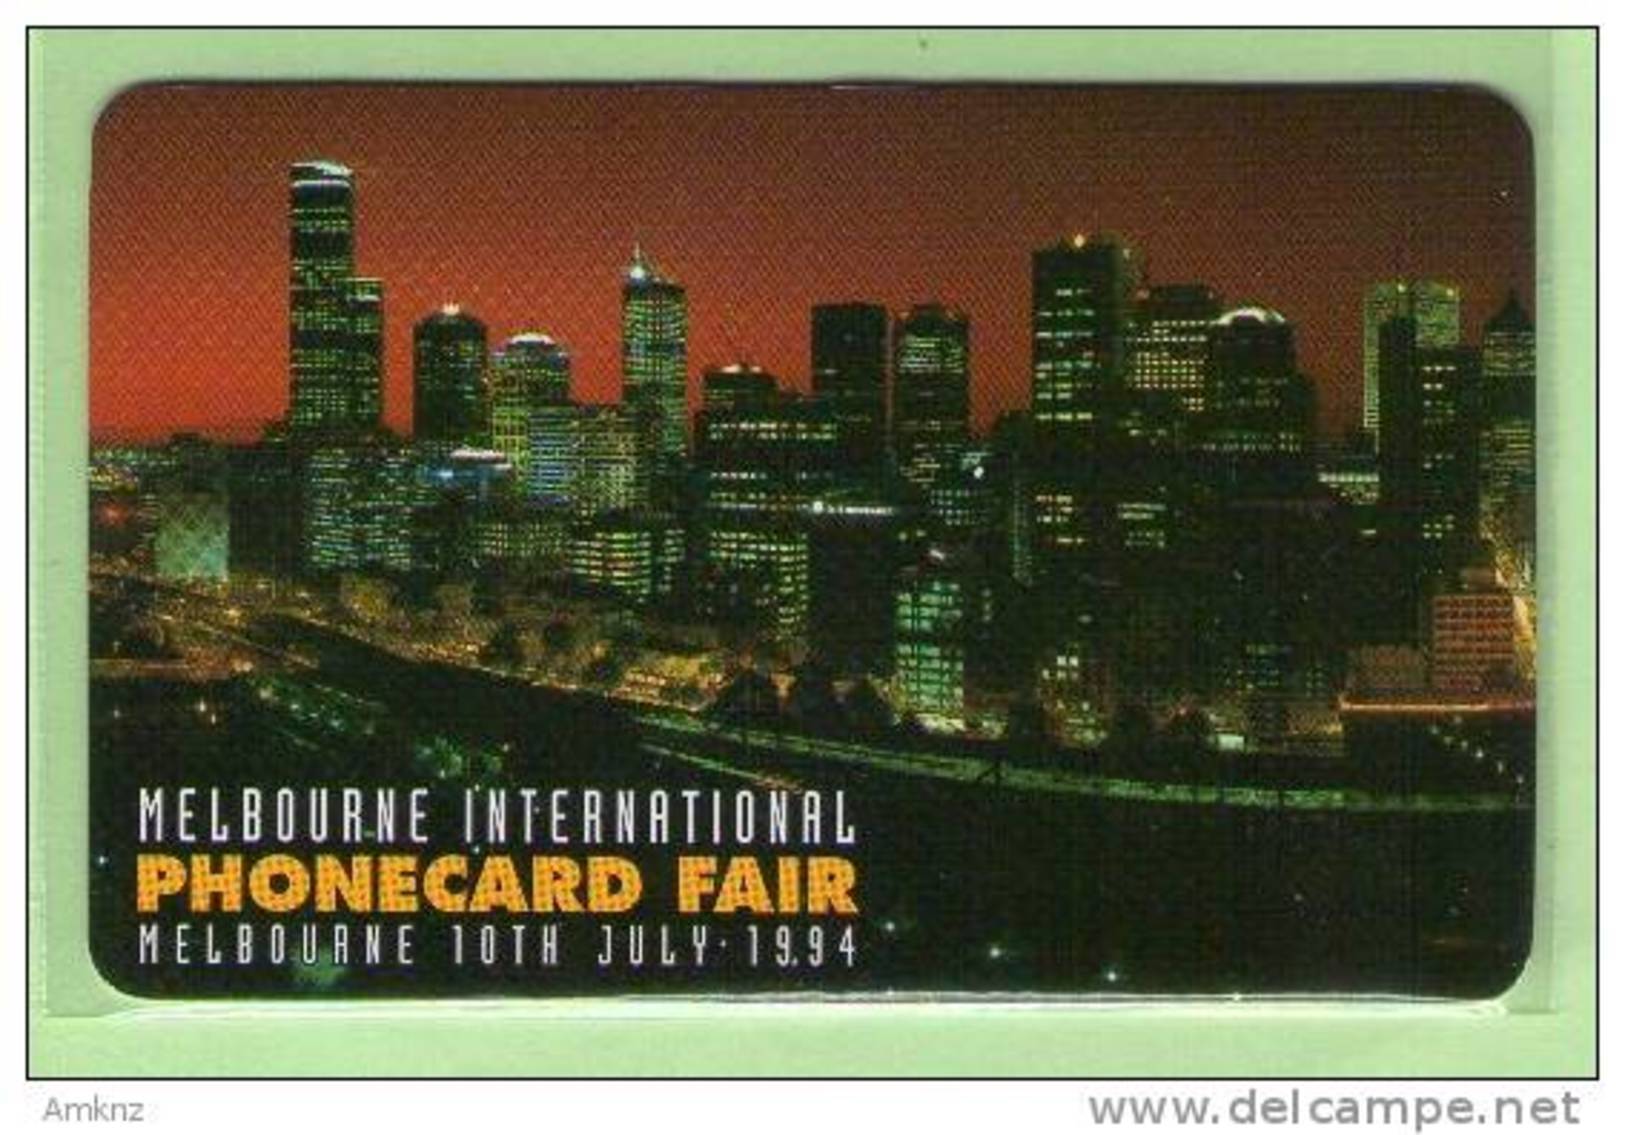 Australia - Paytel - Specimen - 1994 Phonecard Fair, Melbourne, 10 July - Mint - Australien